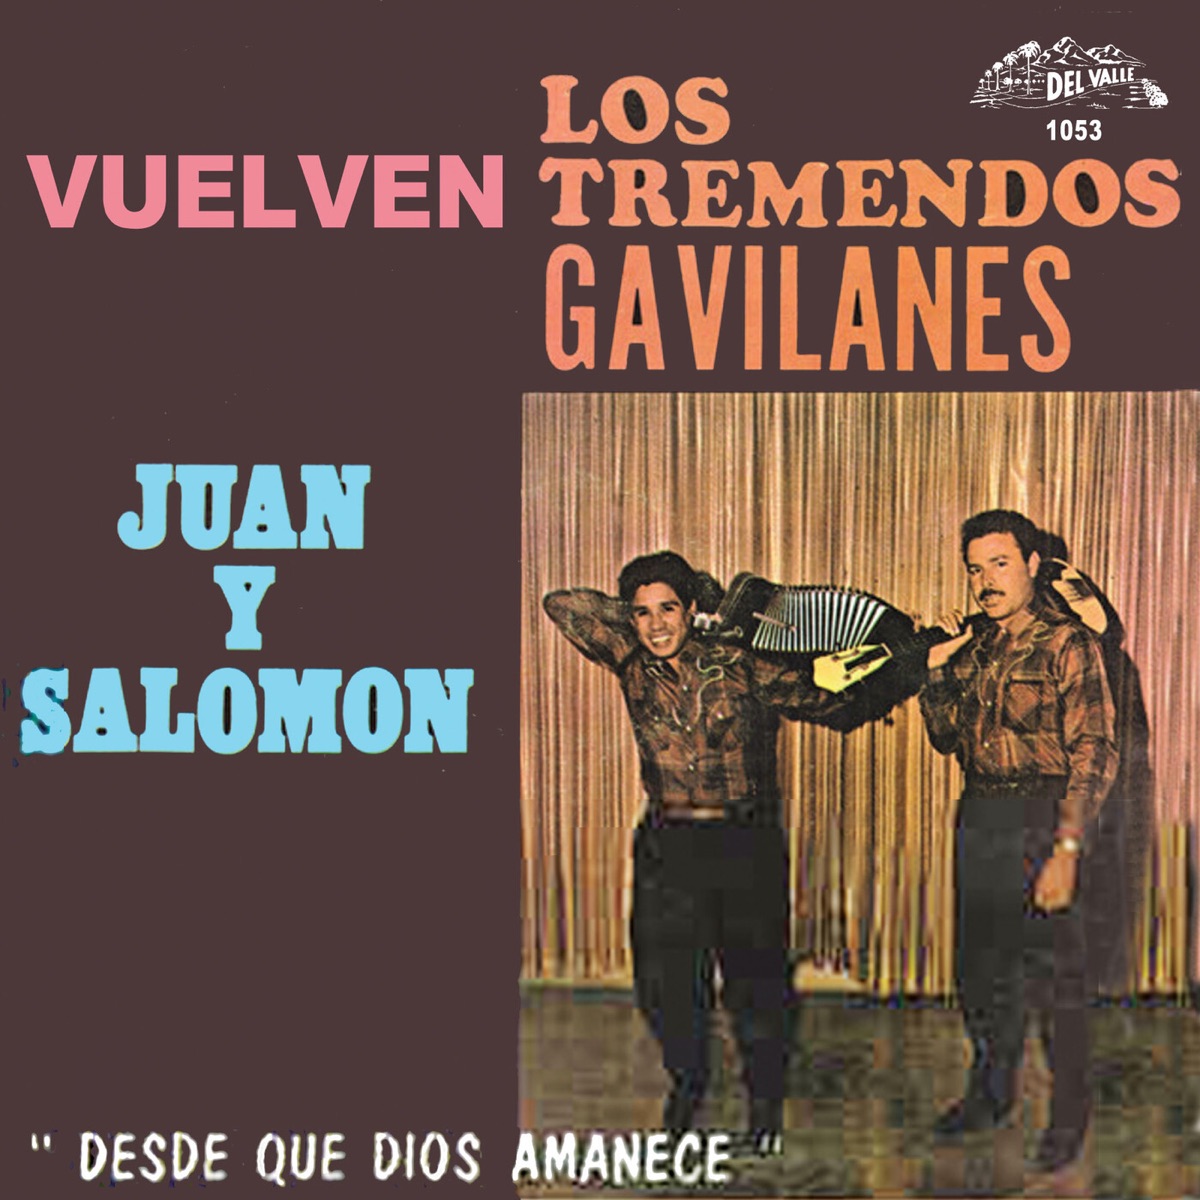 Los Tremendos Gavilanes Juan Y Salomon by Los Tremendos Gavilanes Juan y  Salomón on Apple Music